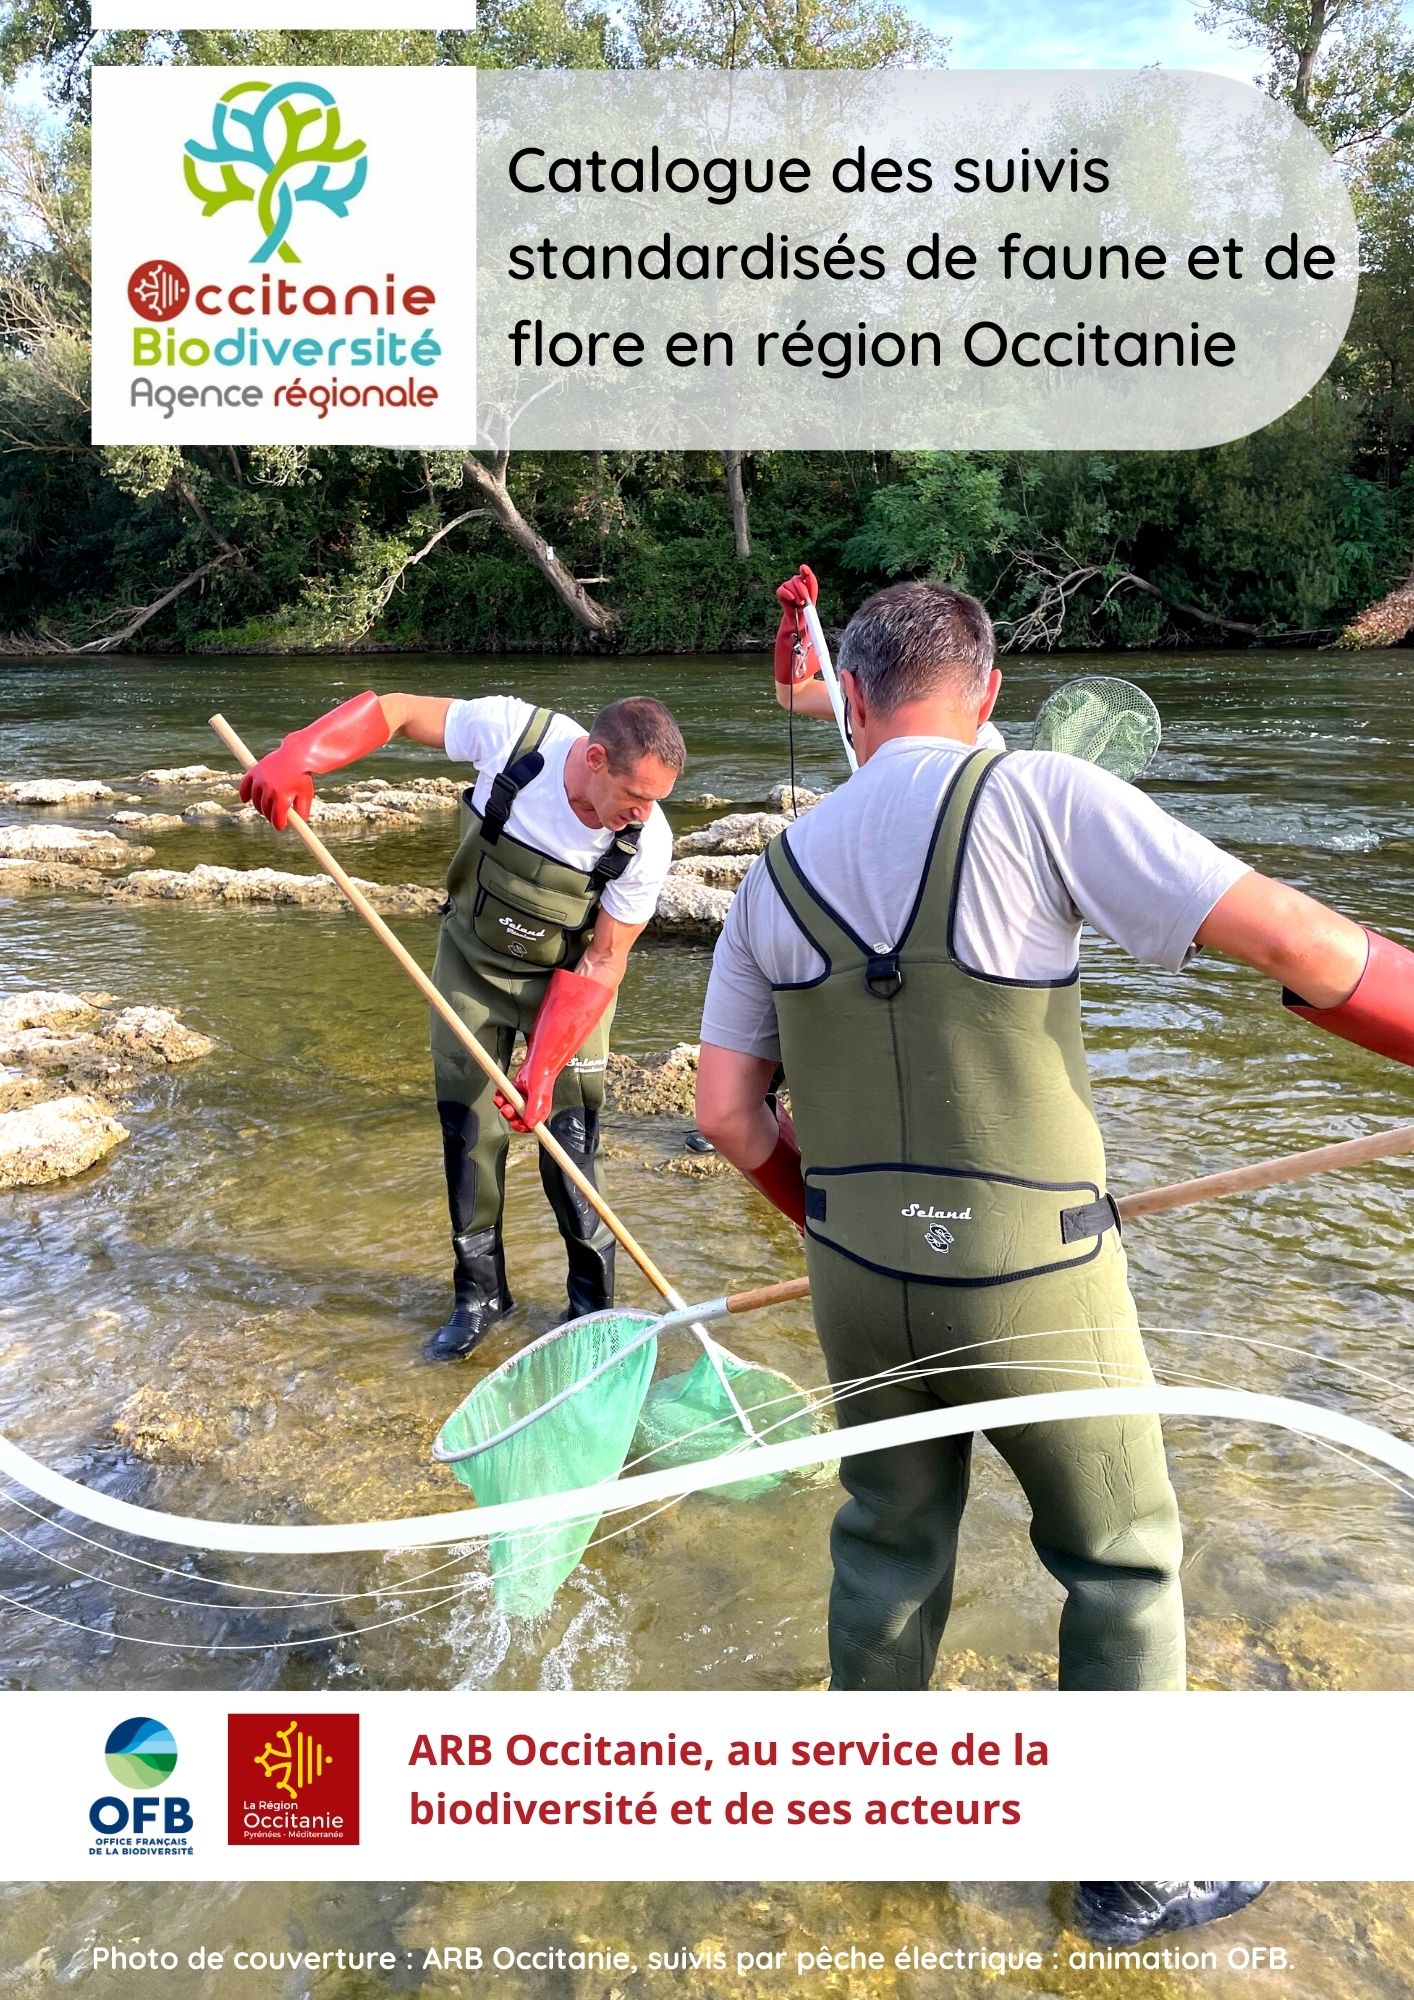 Catalogue des suivis standardisés faune et flore en Occitanie